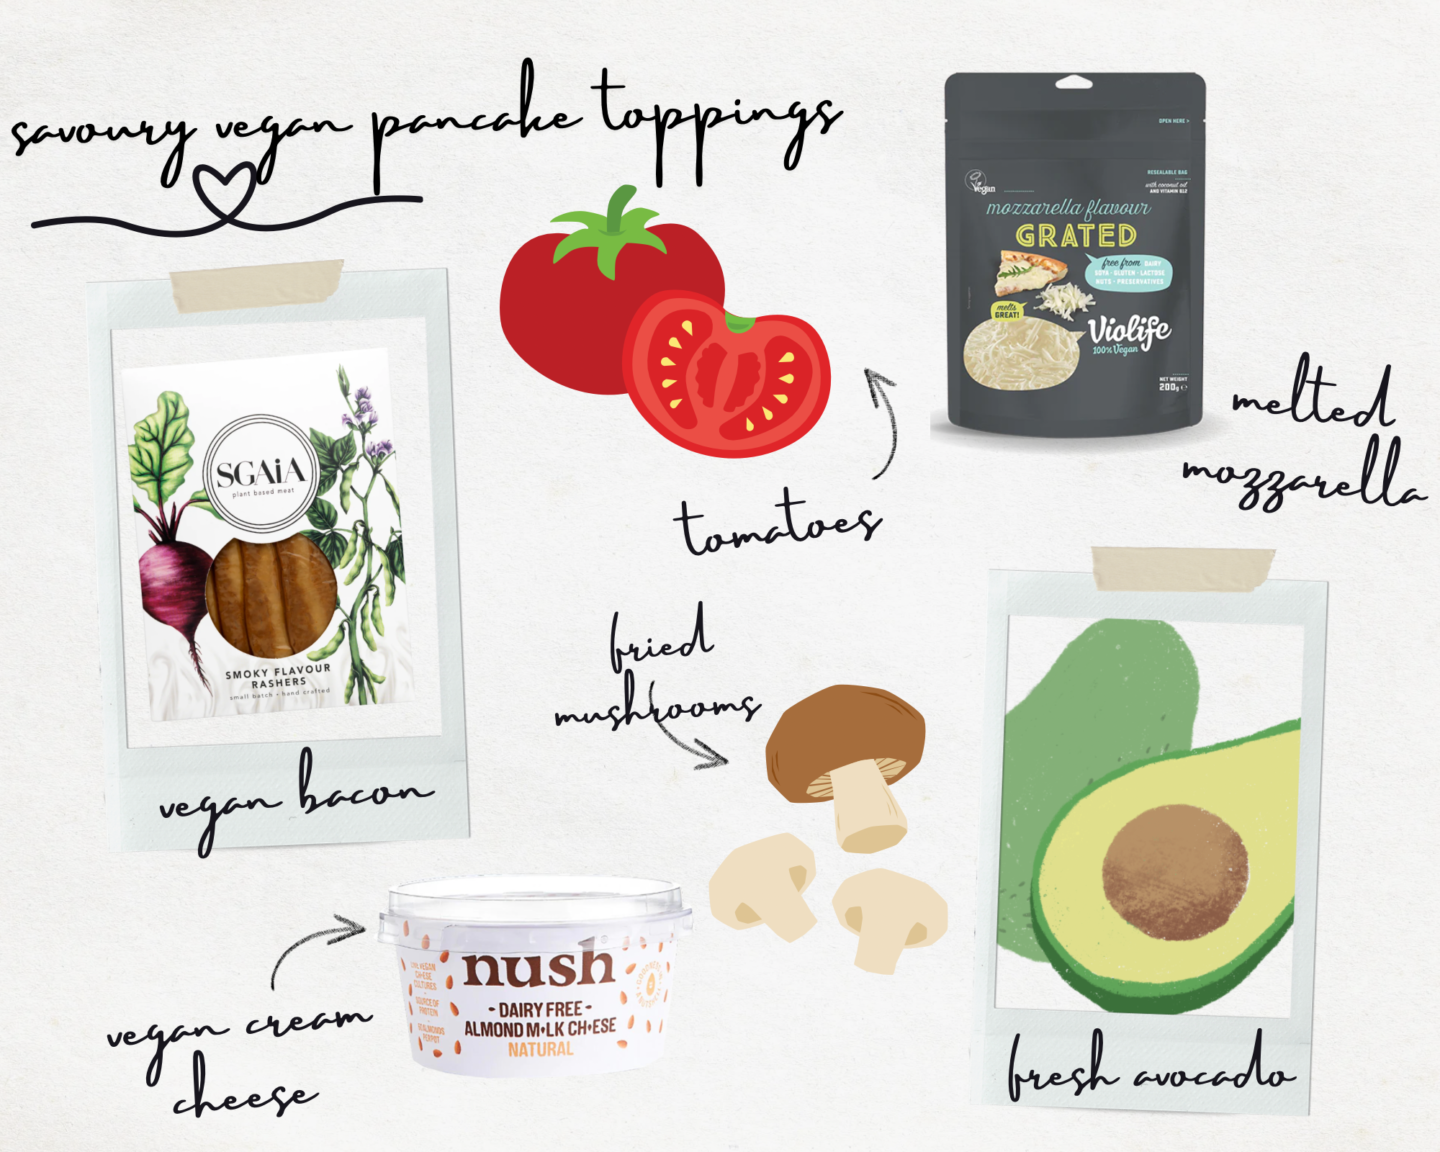 Savoury Vegan Pancake Toppings - infographic